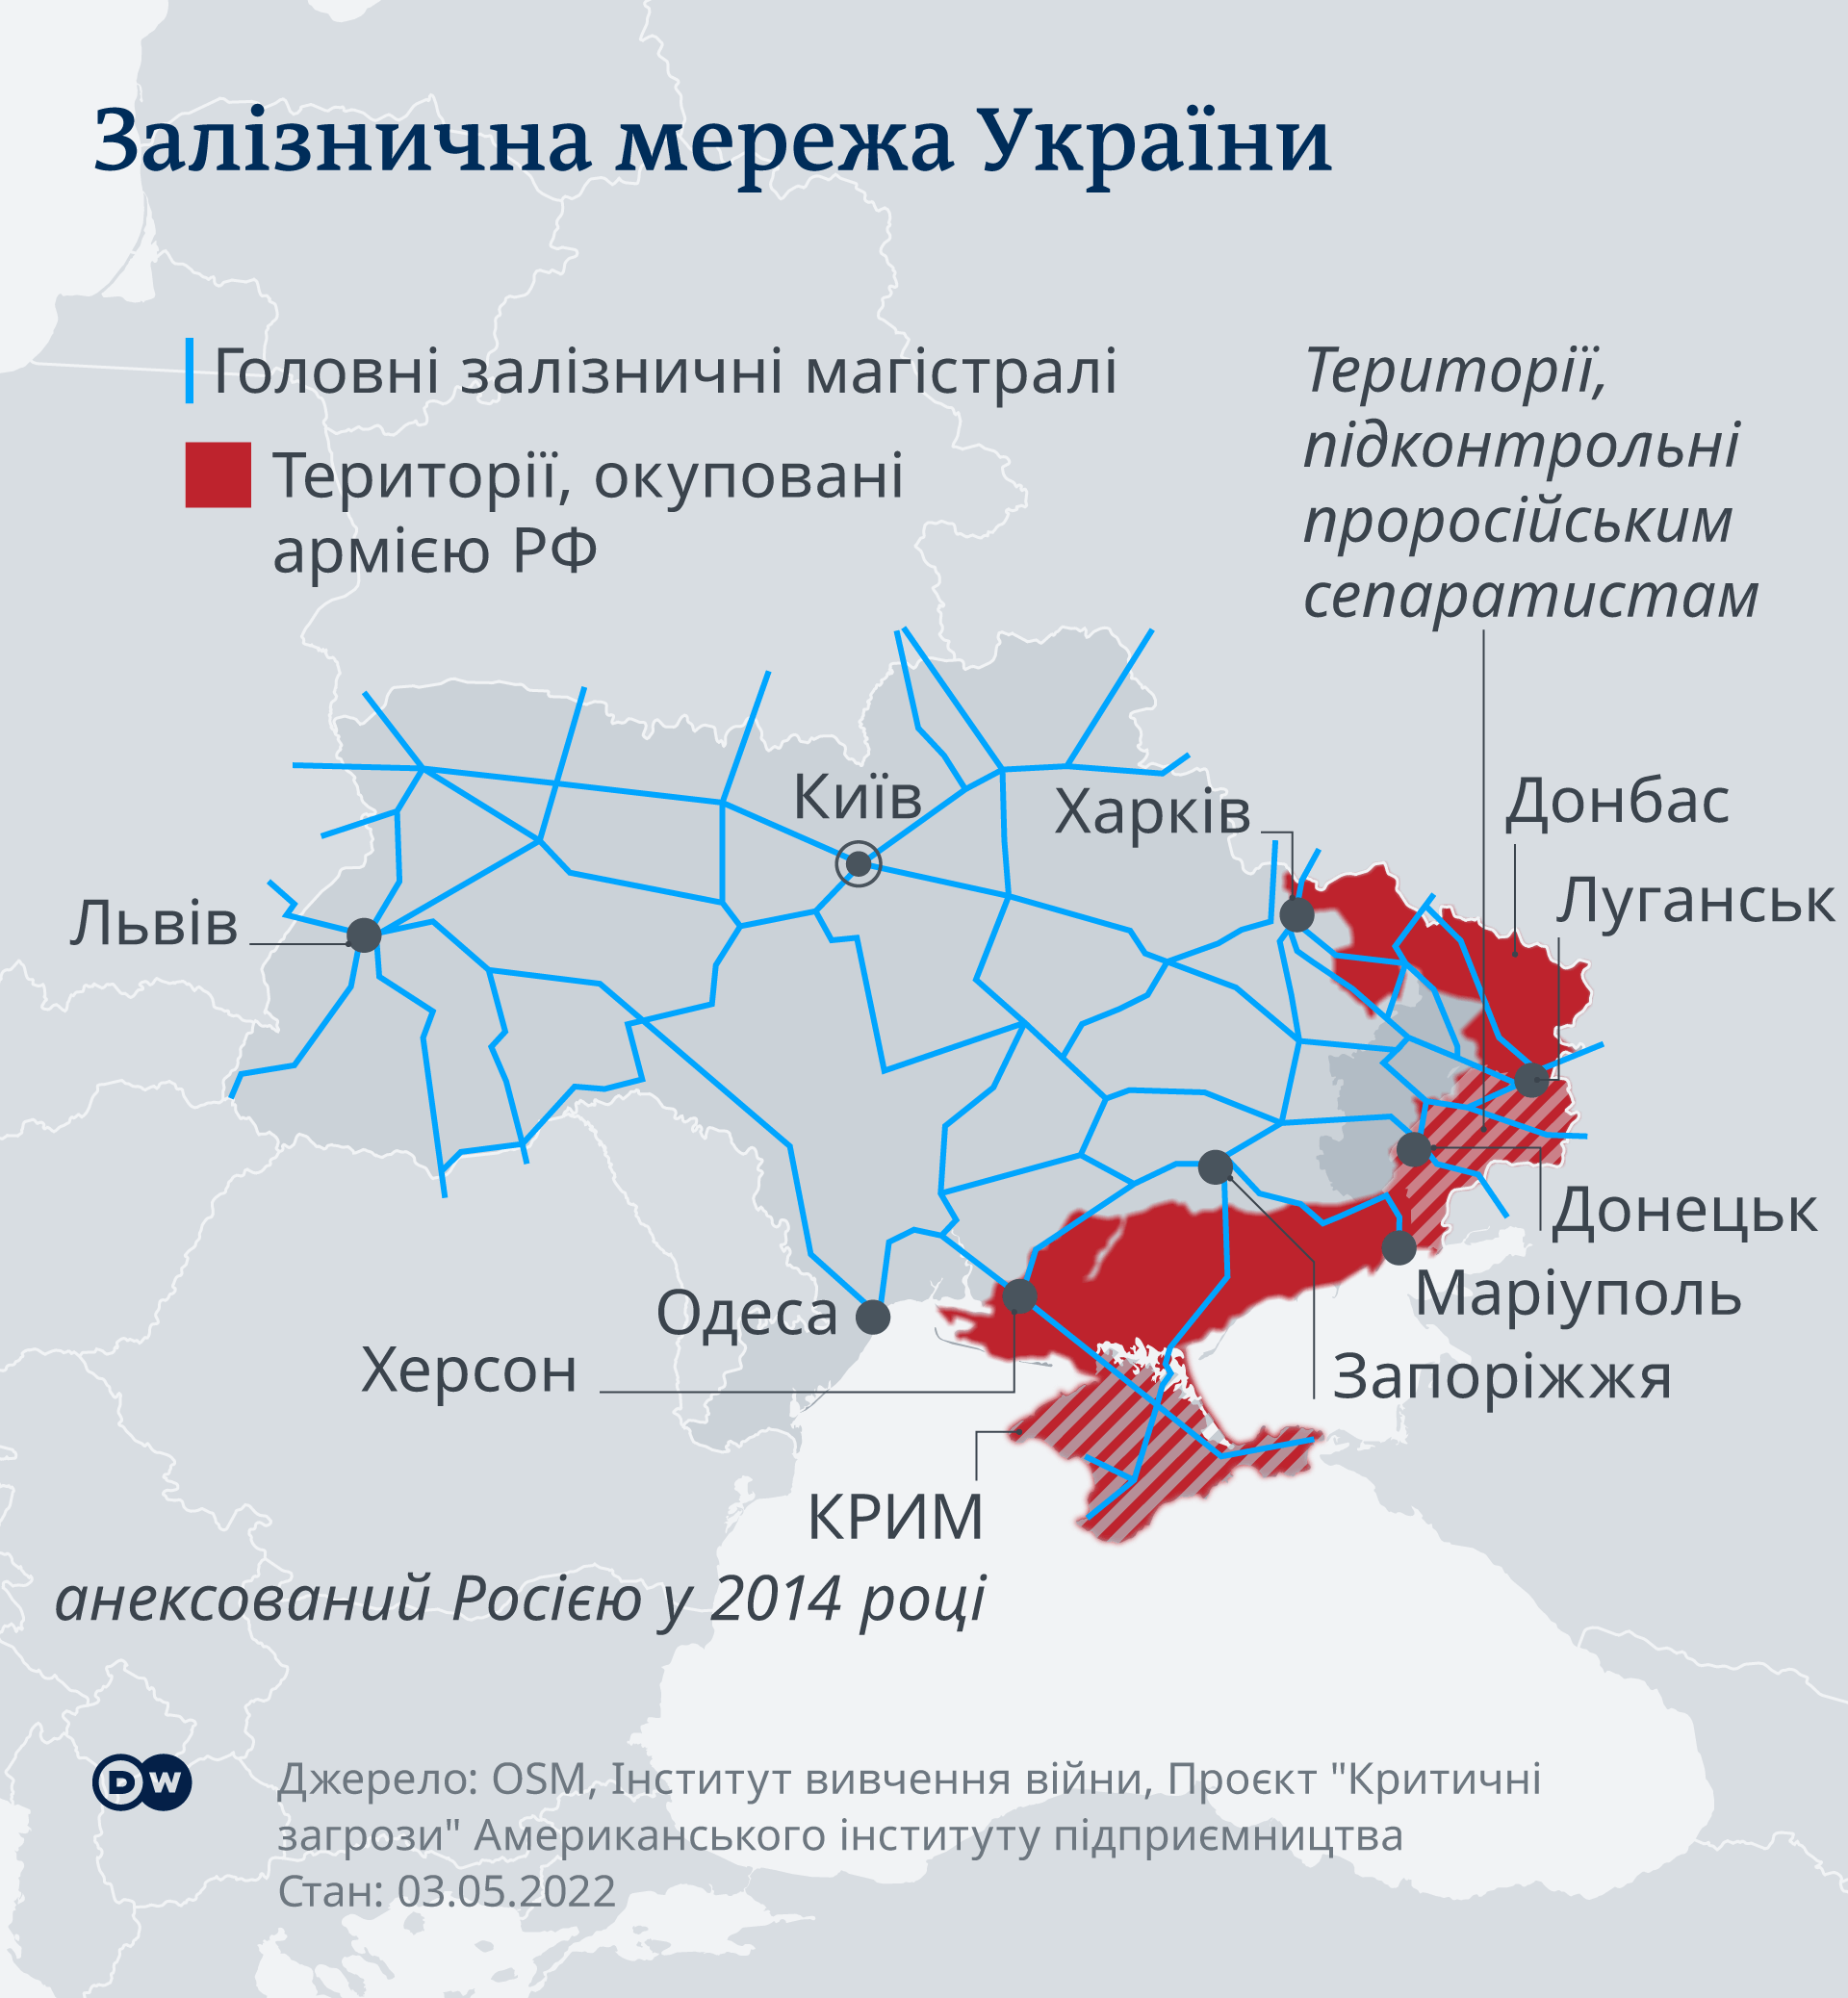 Залізнична мережа України: інфографіка